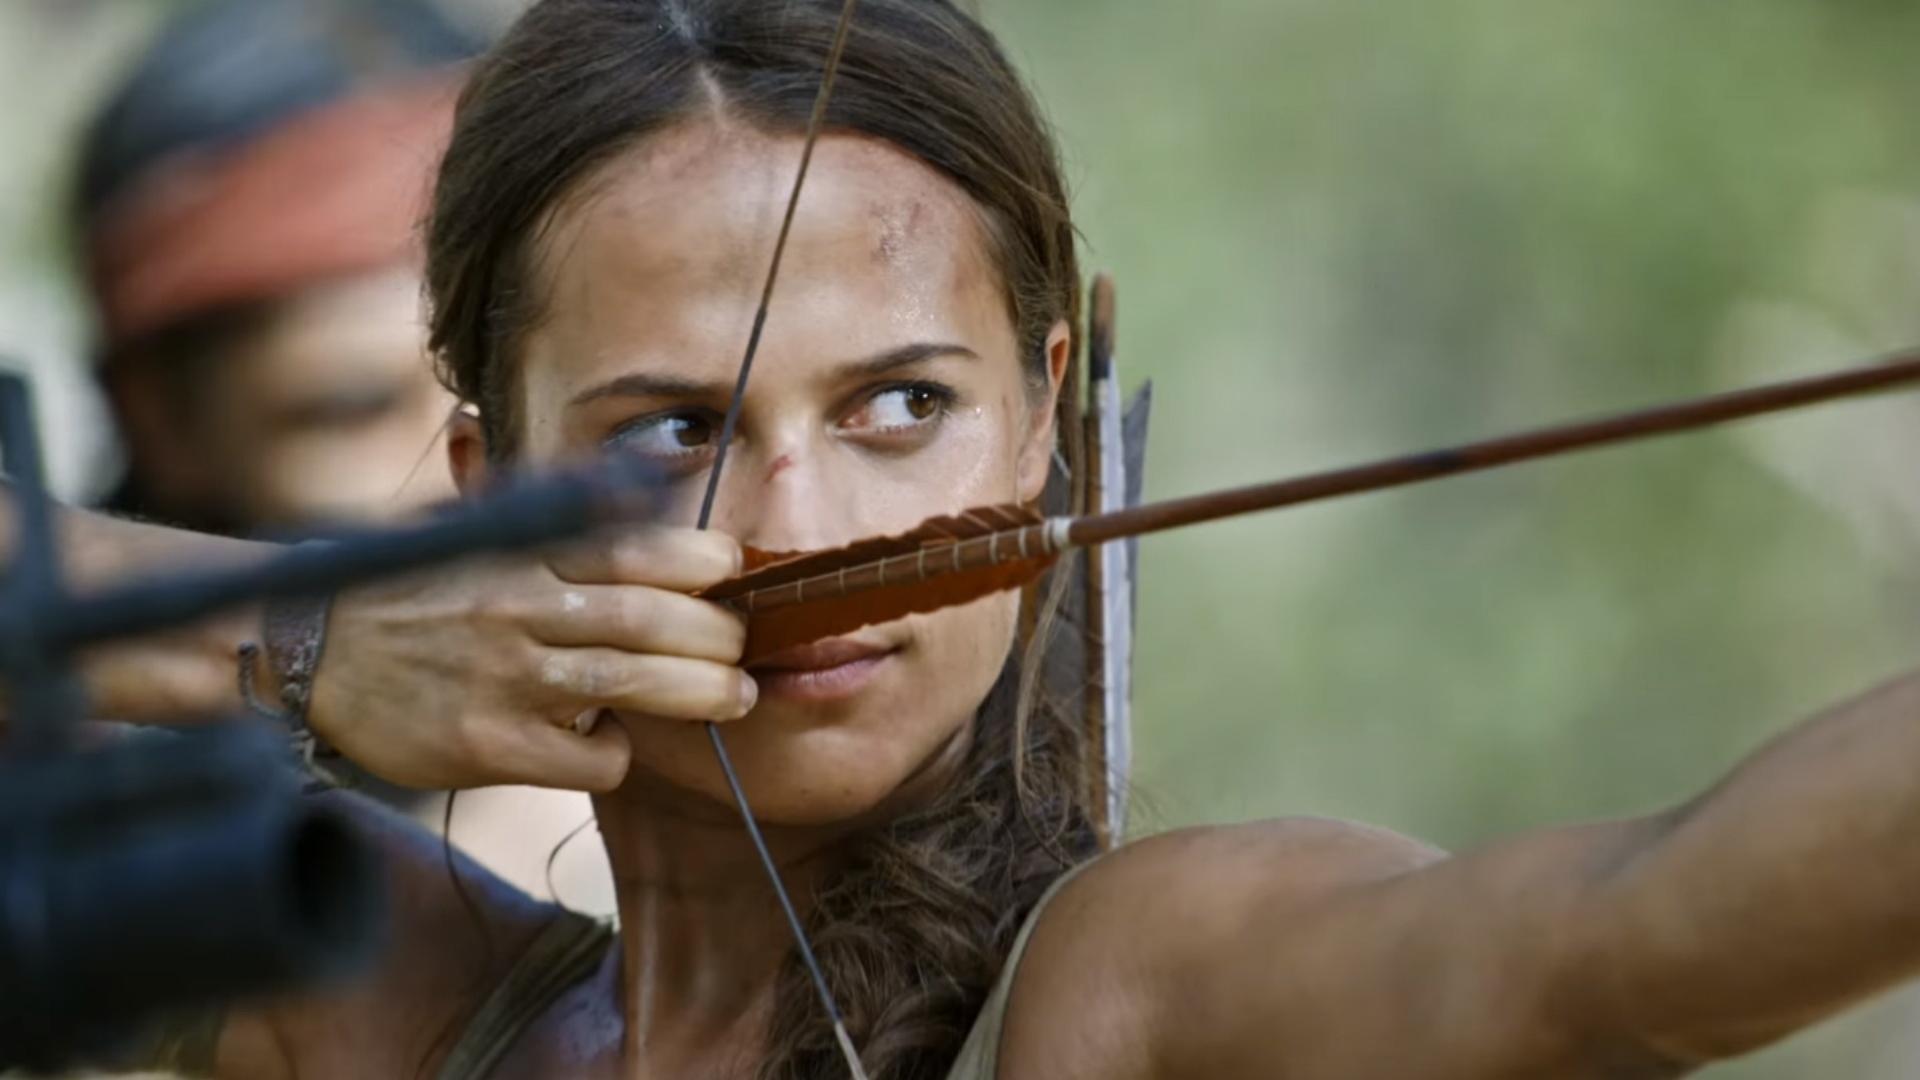 Diretor de novo “Tomb Raider” revela que filme será baseado nos últimos  dois jogos